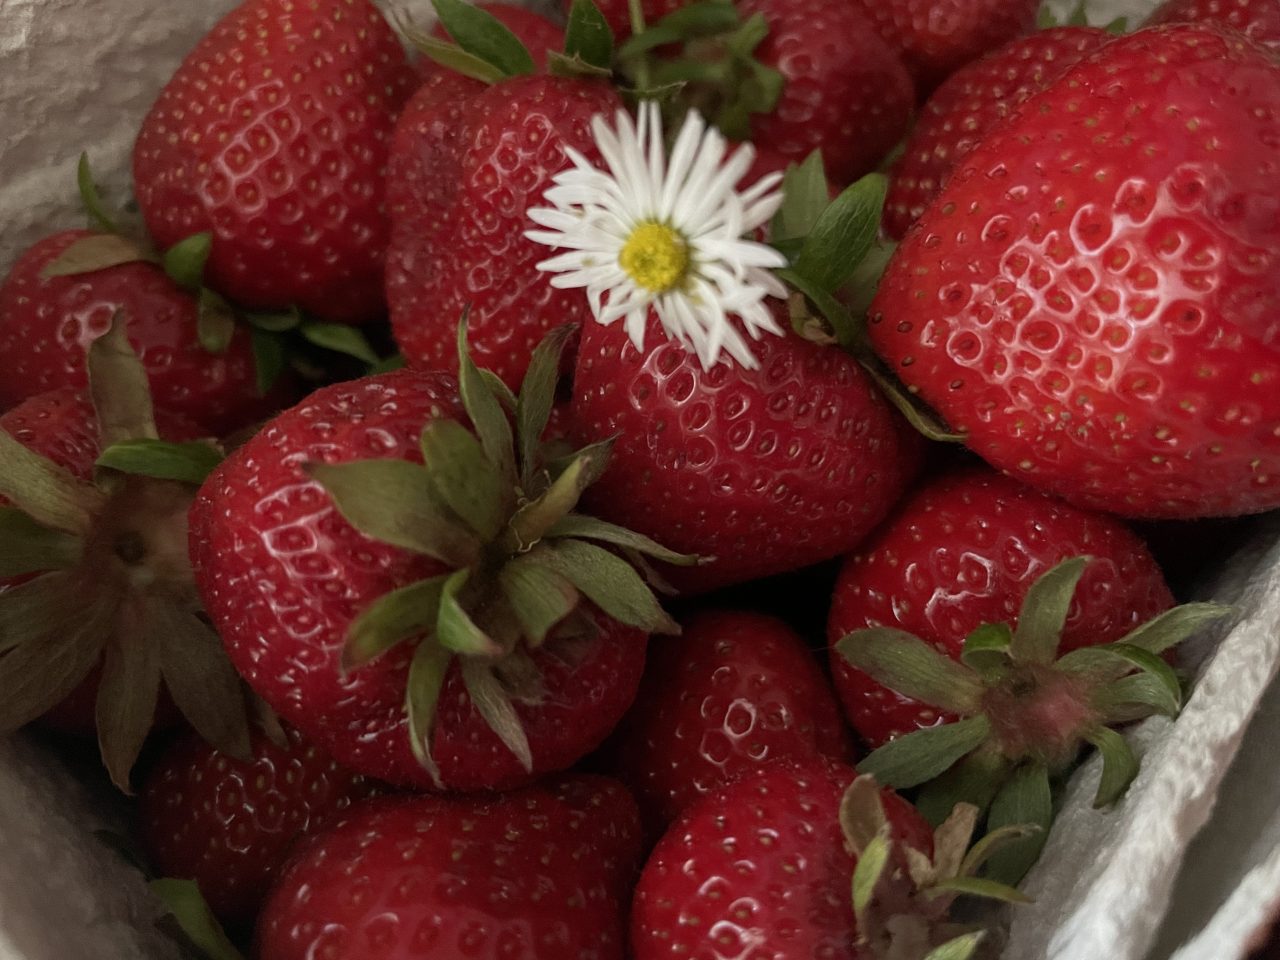 Erdbeeren in einer Schale mit einem Gänseblümchen garniert